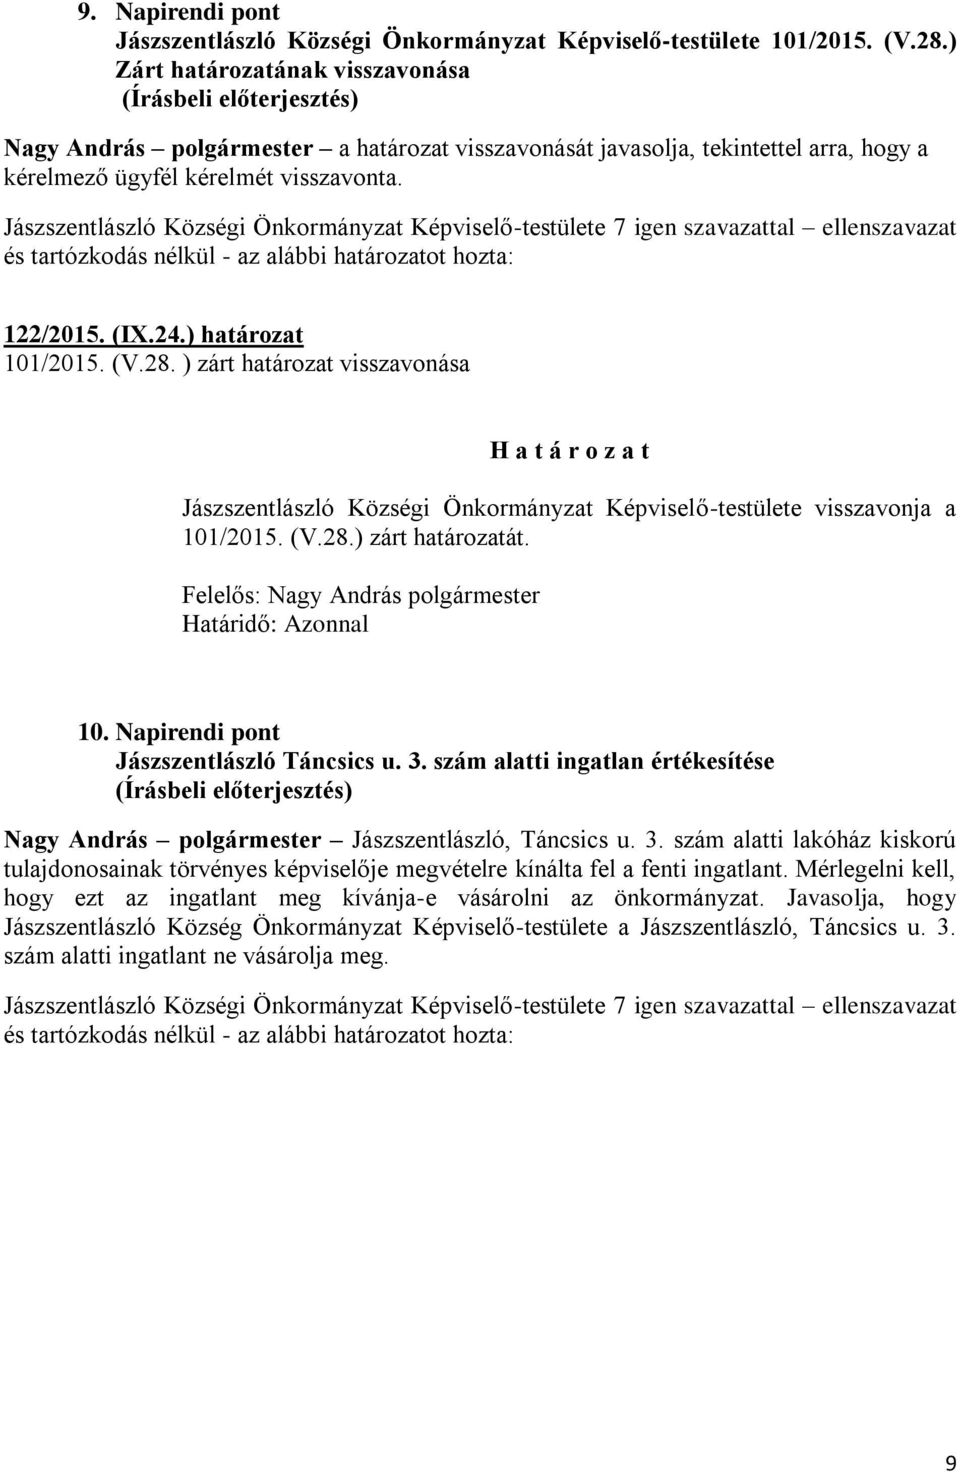 (V.28. ) zárt határozat visszavonása Jászszentlászló Községi Önkormányzat Képviselő-testülete visszavonja a 101/2015. (V.28.) zárt határozatát. Határidő: Azonnal 10.